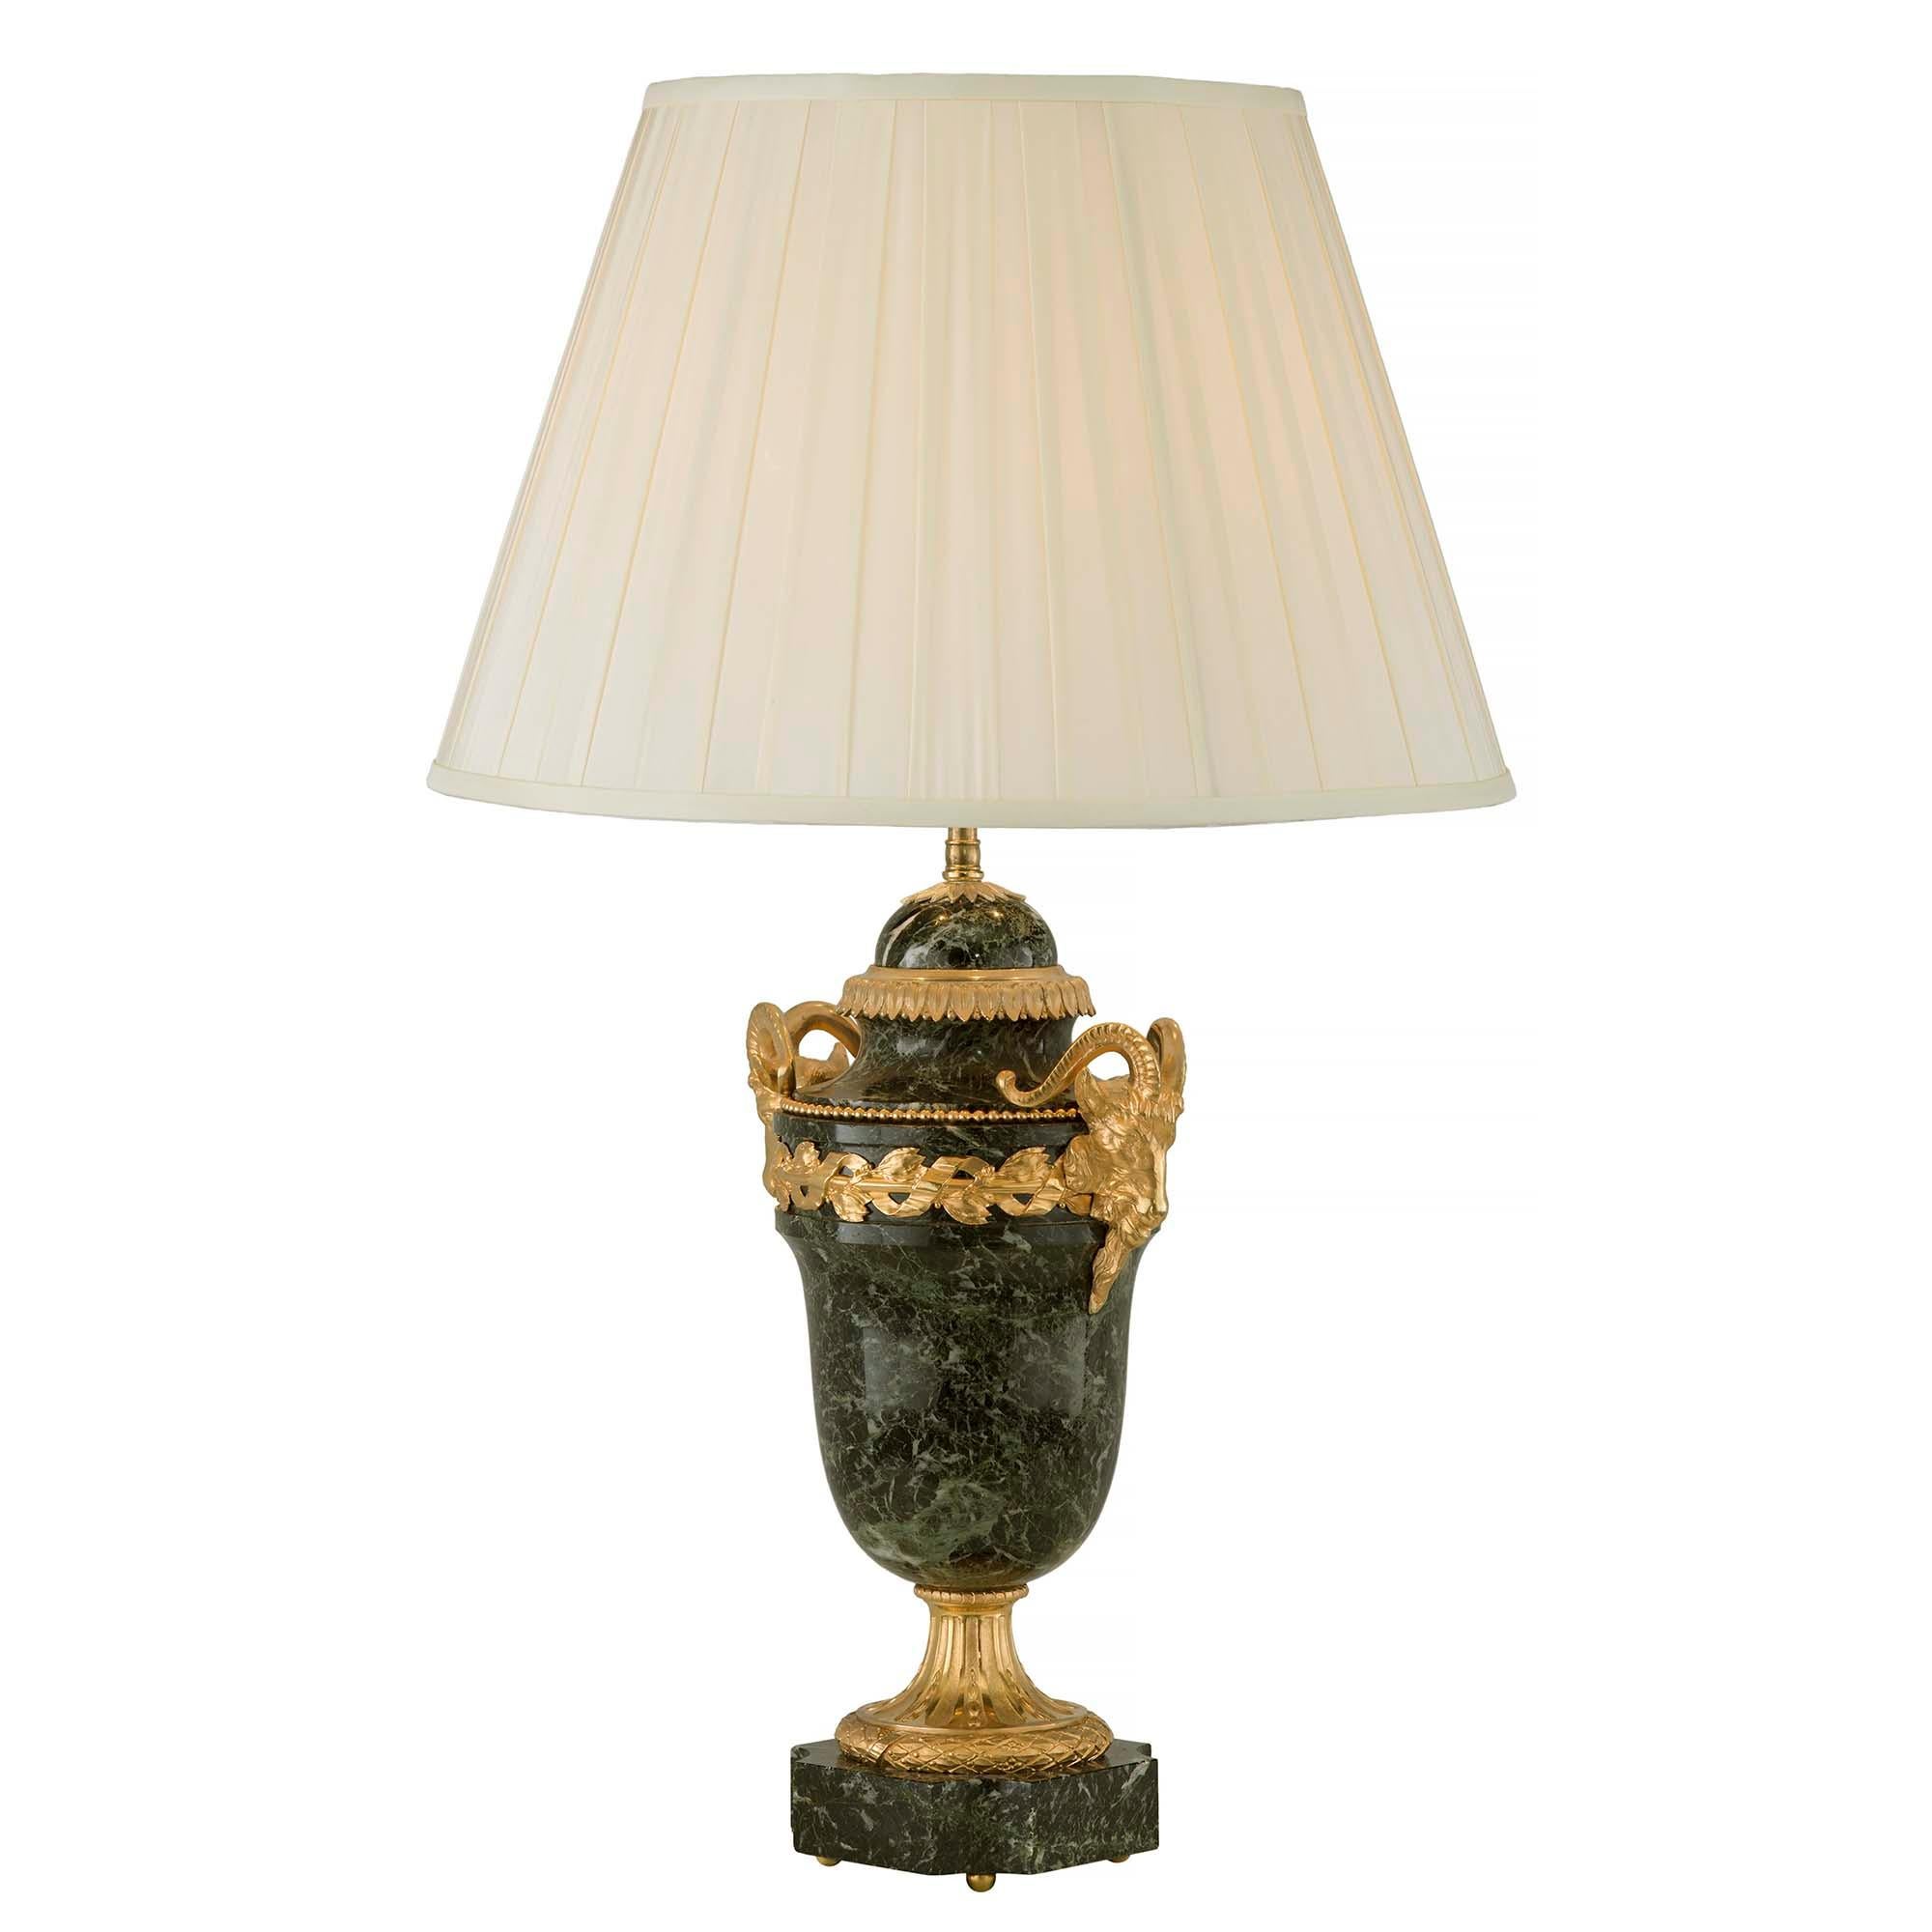 Ein elegantes Paar französischer Lampen aus dem 19. Jahrhundert aus Louis XVI, Ormolu und antikem Marmor. Jede Leuchte steht auf Kugelfüßen aus Ormolu unter einem Marmorsockel mit konkaven Ecken. Der reich ziselierte, satinierte und brünierte Sockel